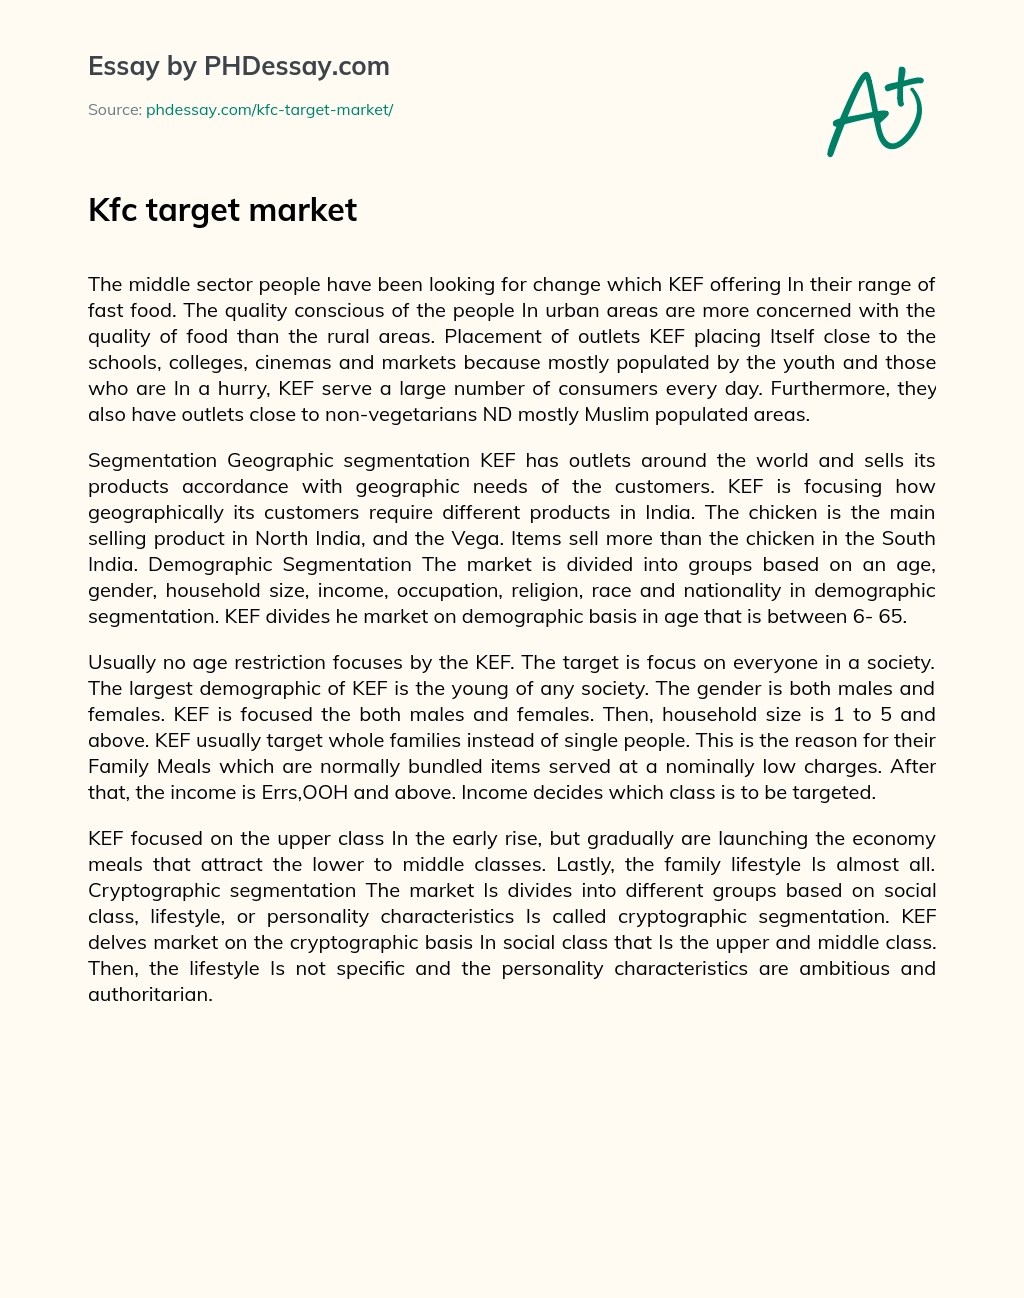 Kfc target market essay